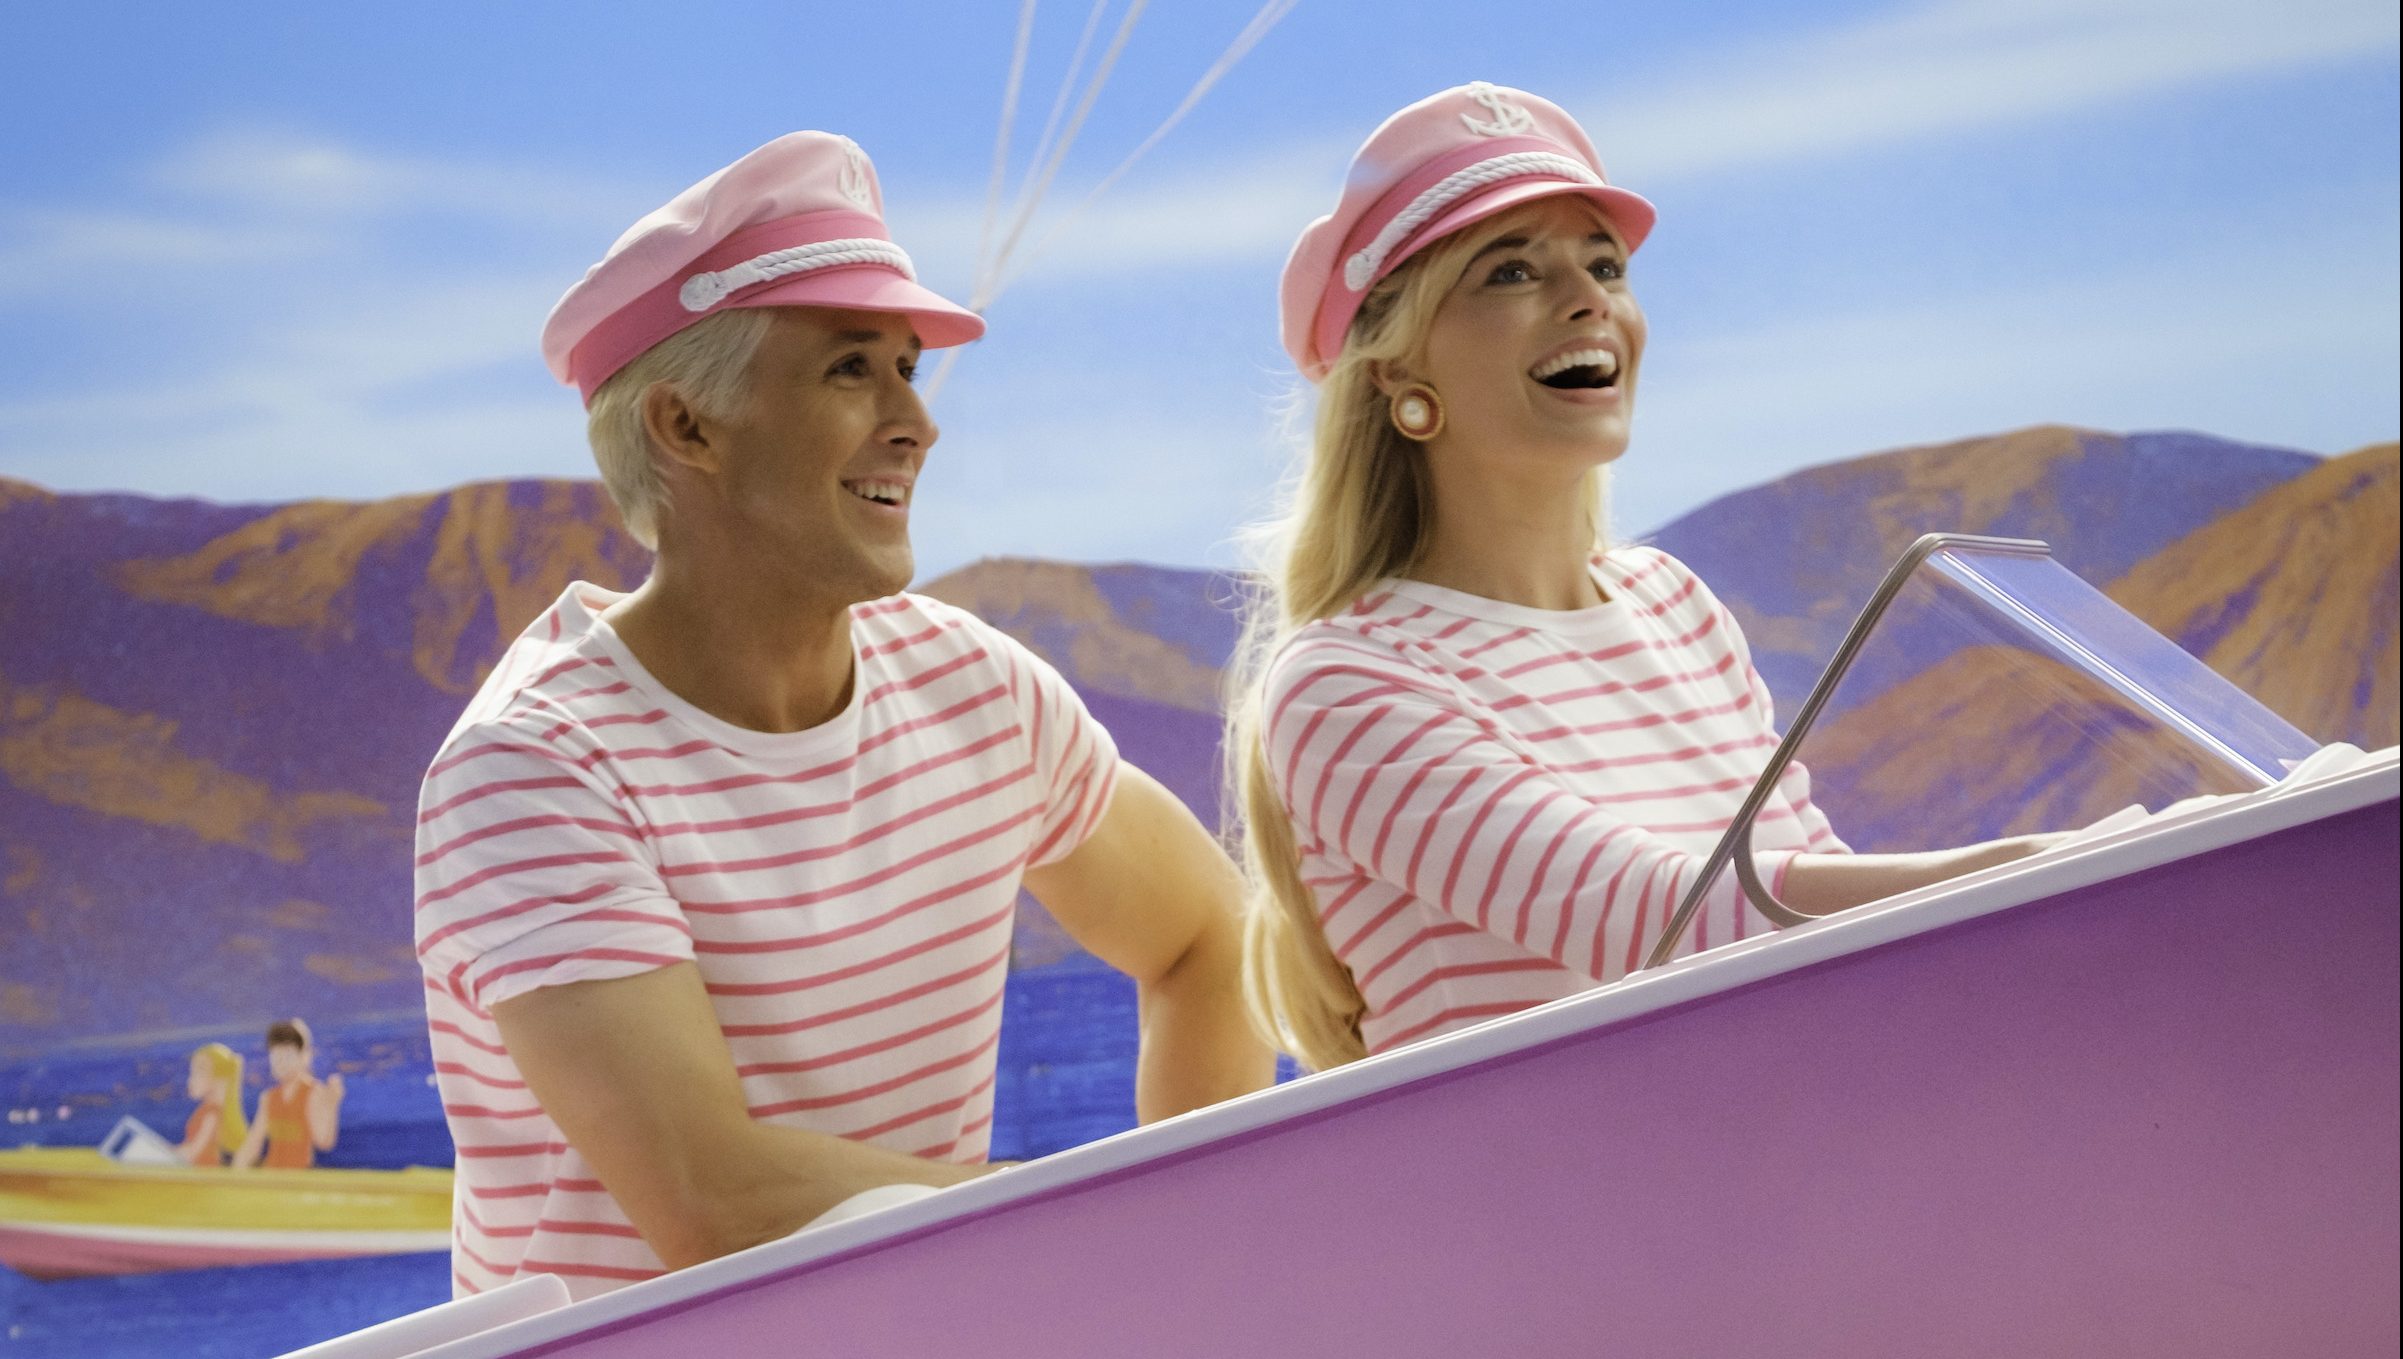 Ken and Barbie go boating (Courtesy of Warner Bros.)